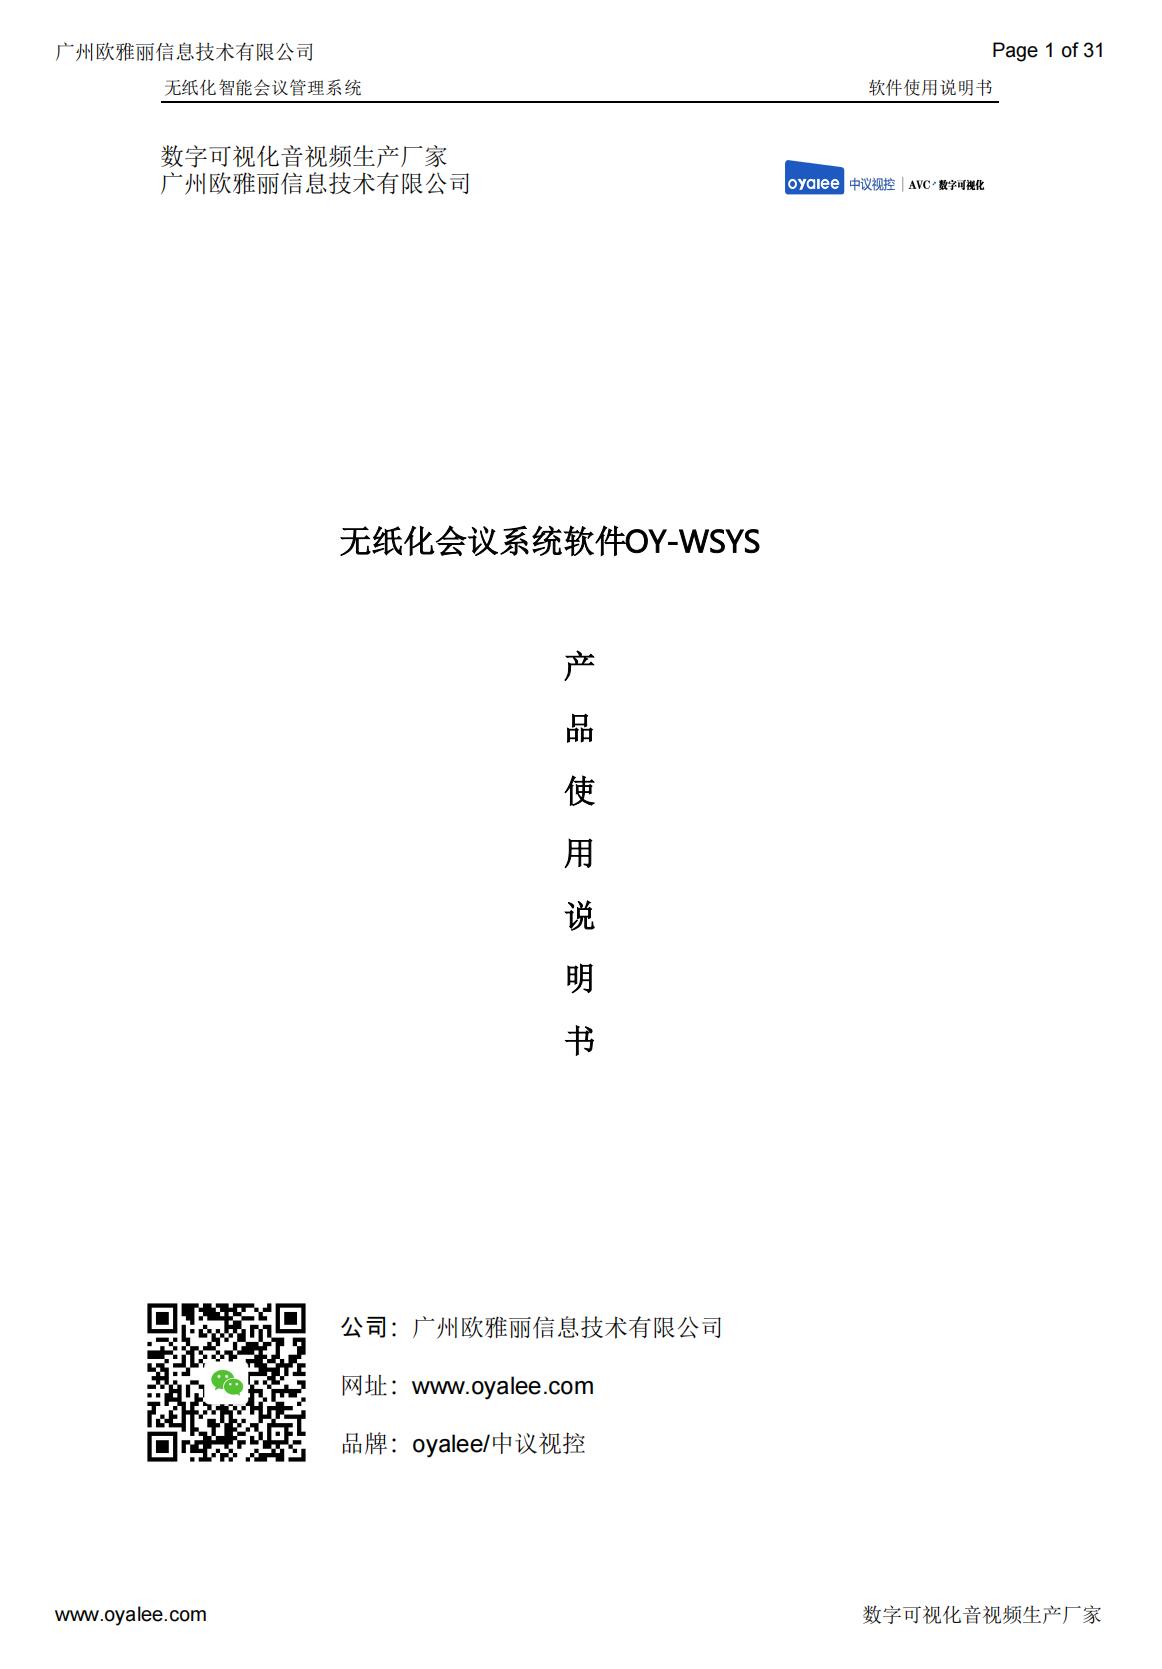 无纸化会议系统软件OY-WSYS说明书